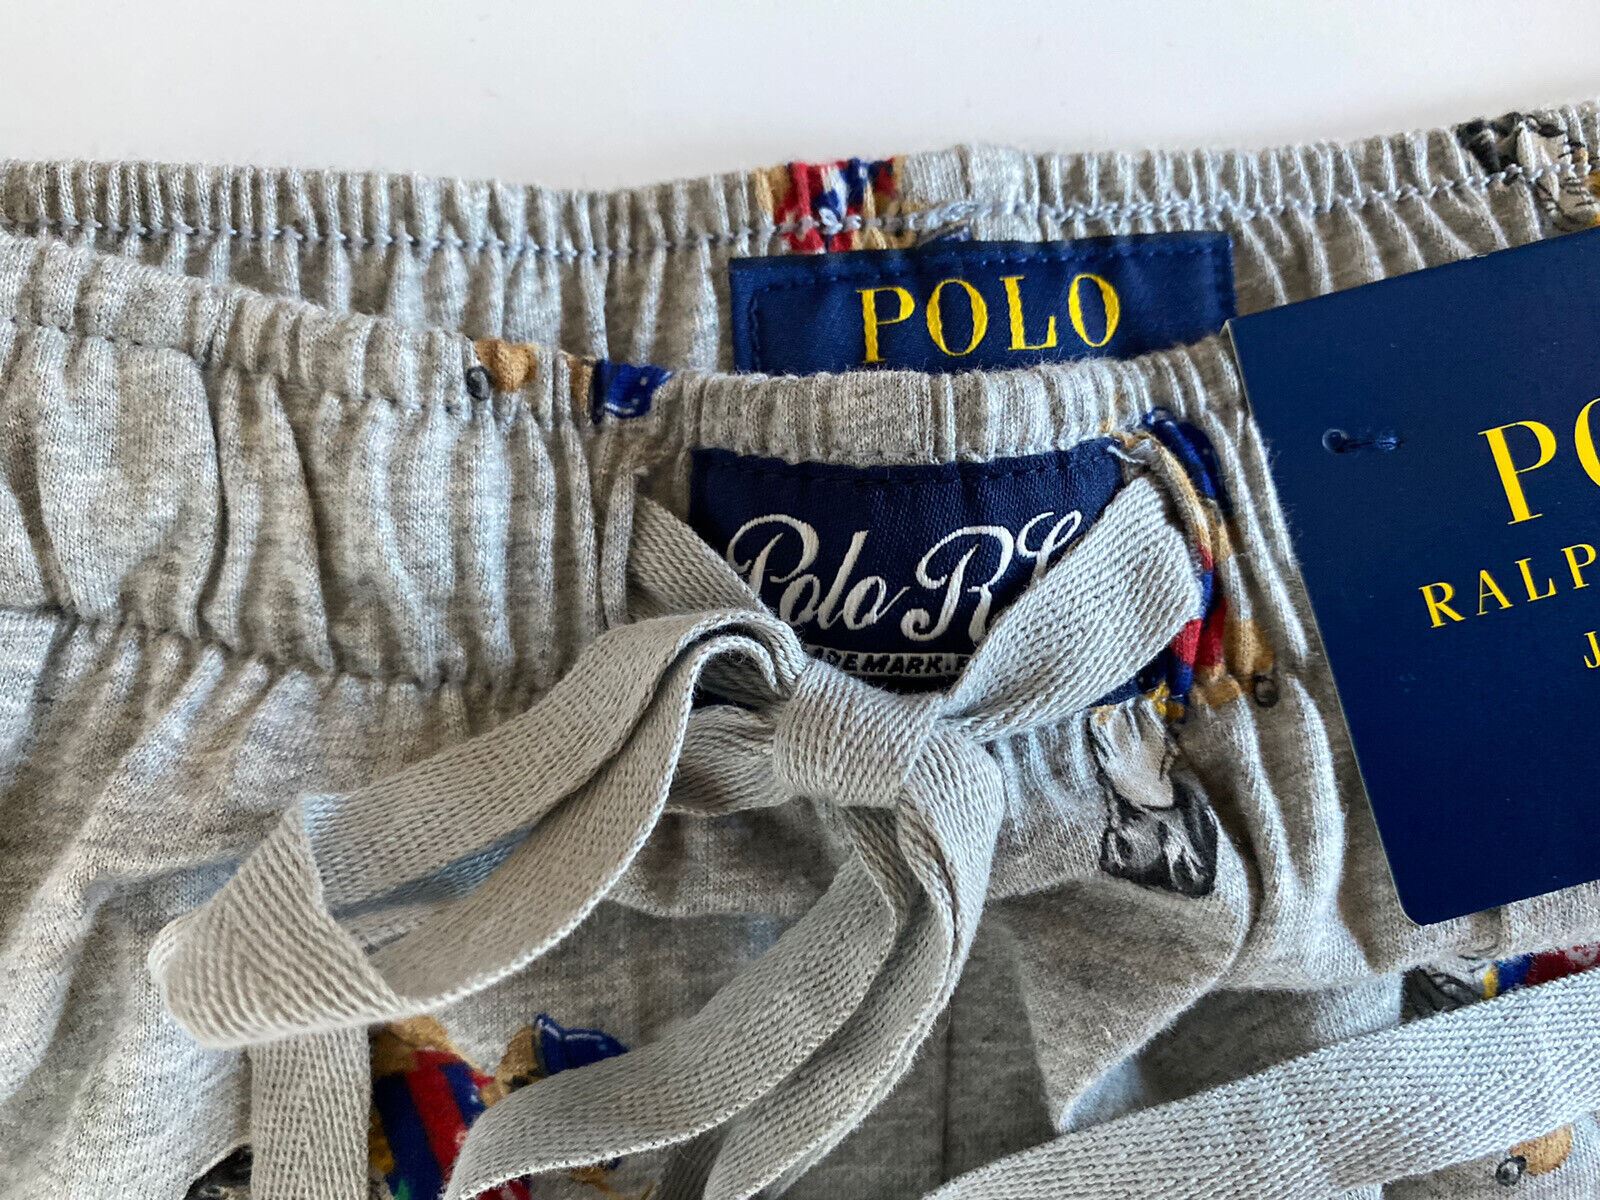 Neu mit Etikett: Polo Ralph Lauren Herren-Pyjamahose mit Bärenmuster, Grau, Baumwolle, Größe L